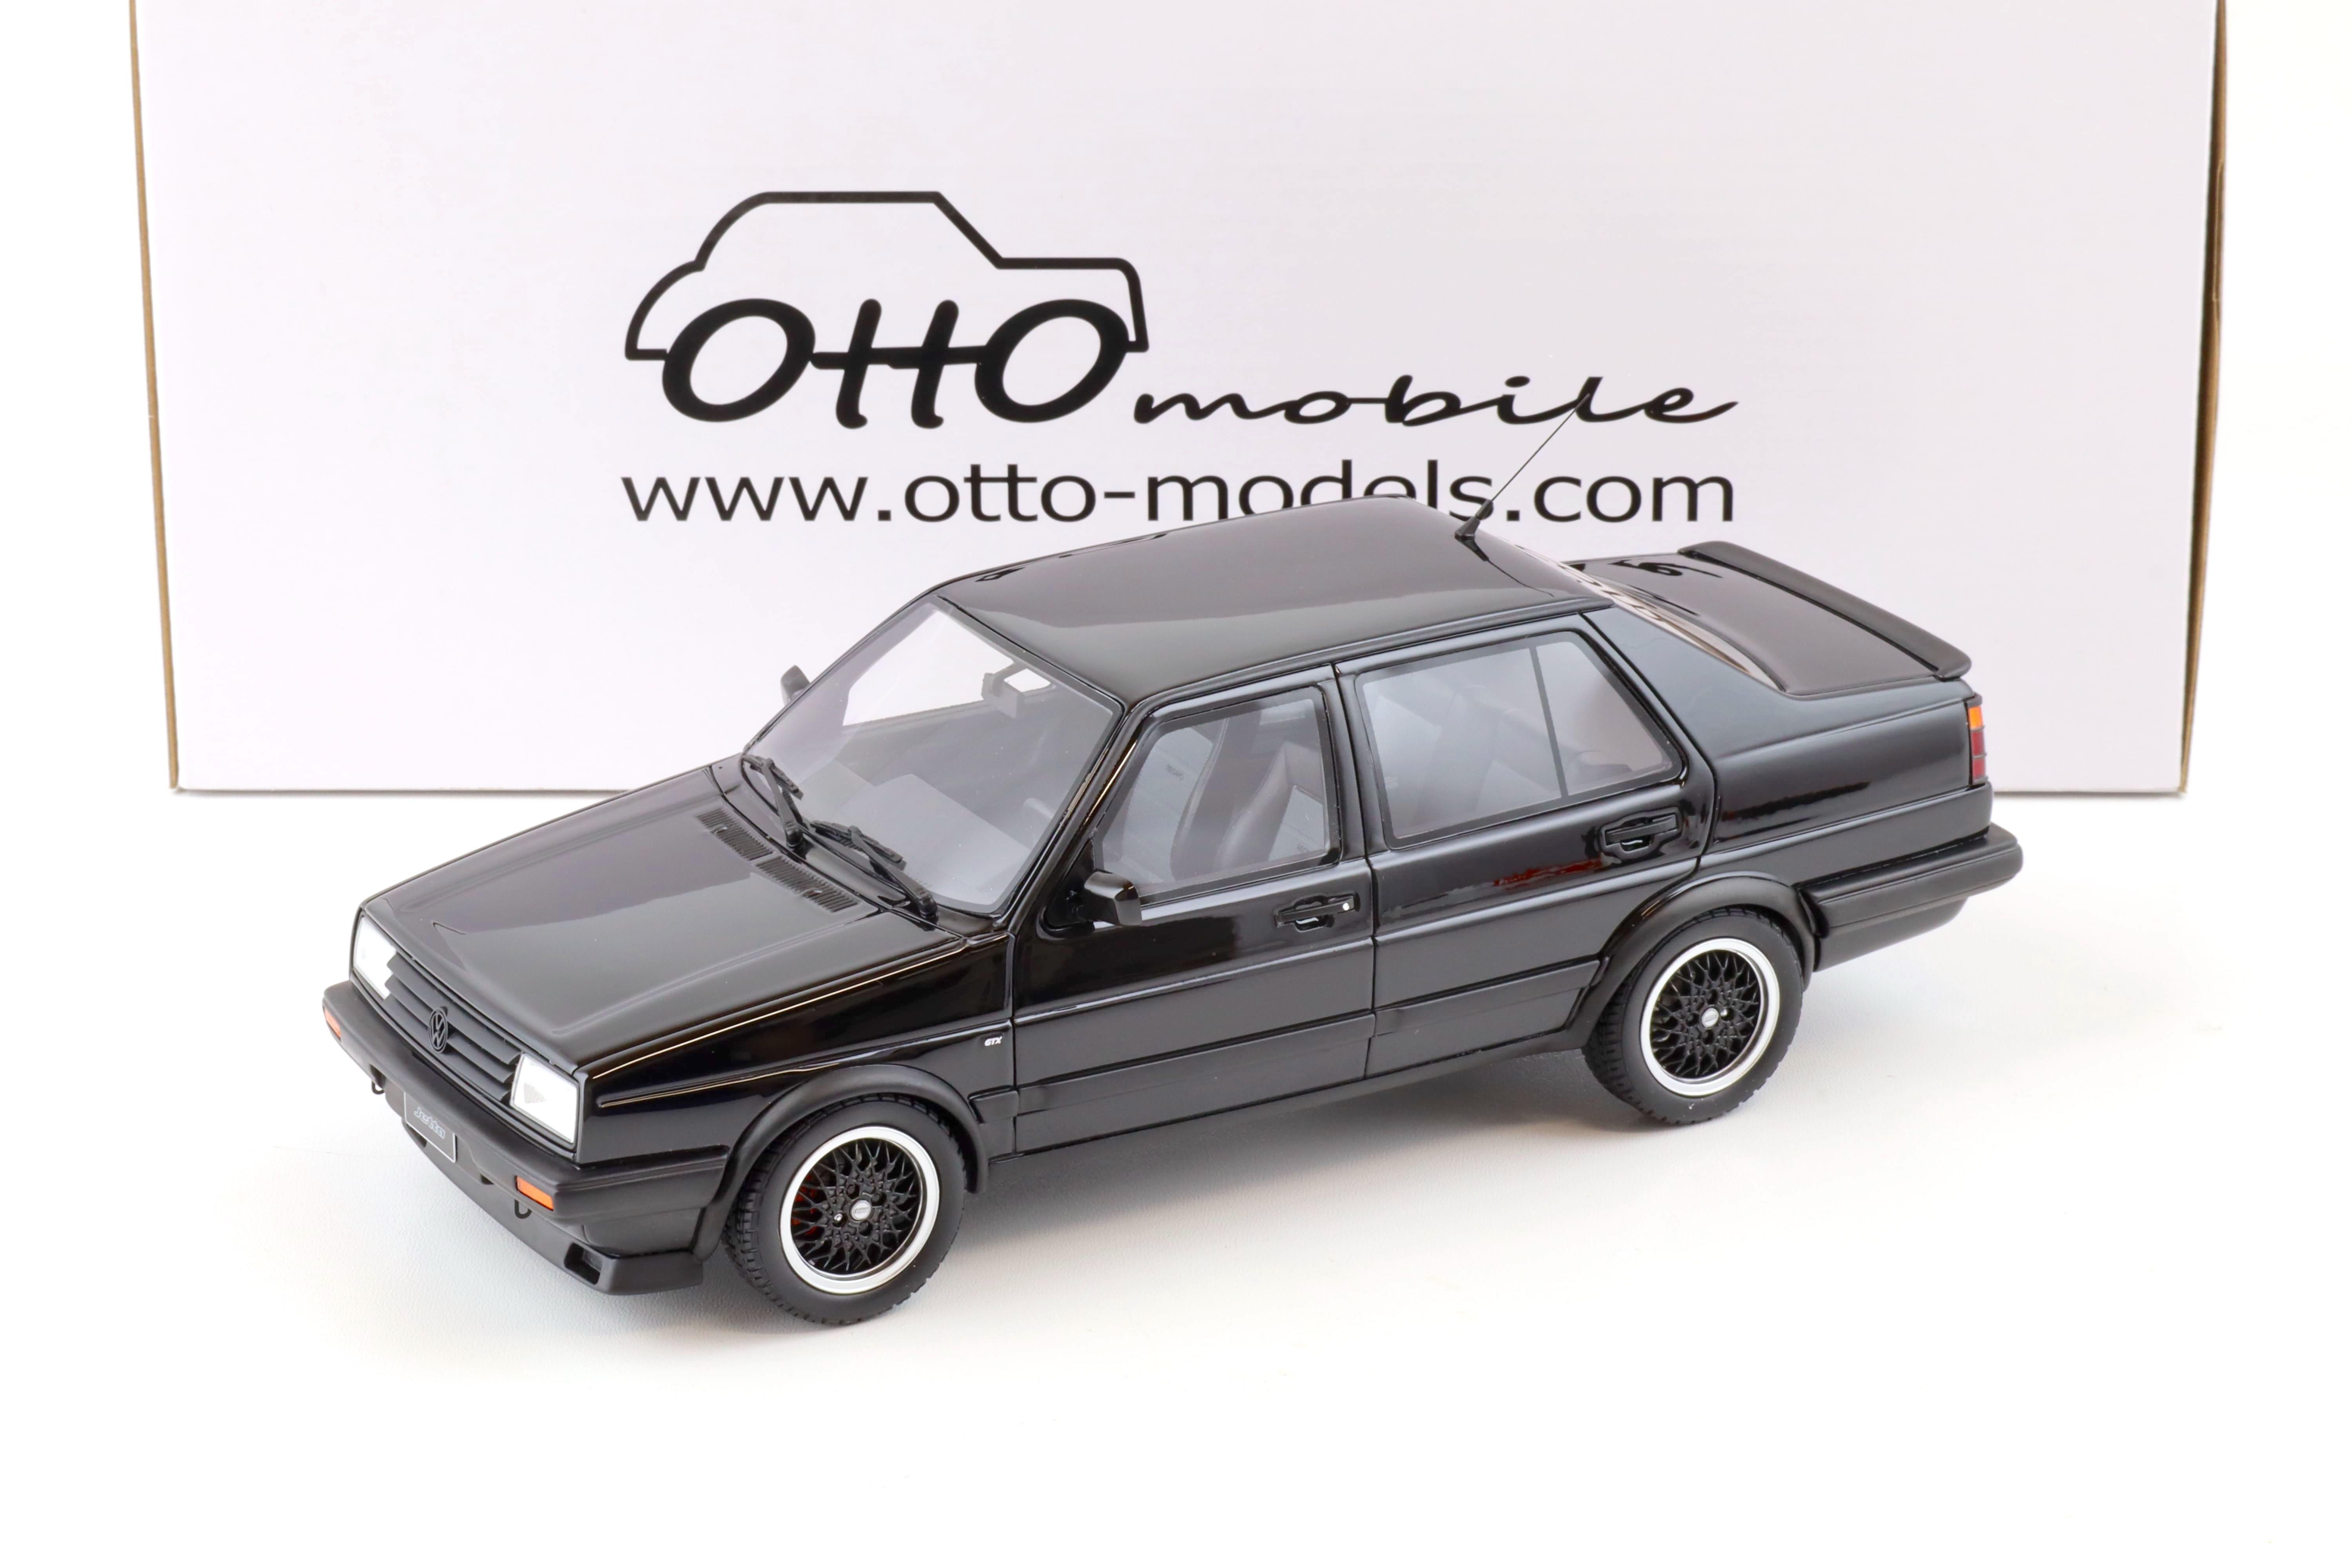 1:18 OTTO mobile OT1021 VW Jetta MK2 Sedan black 1987